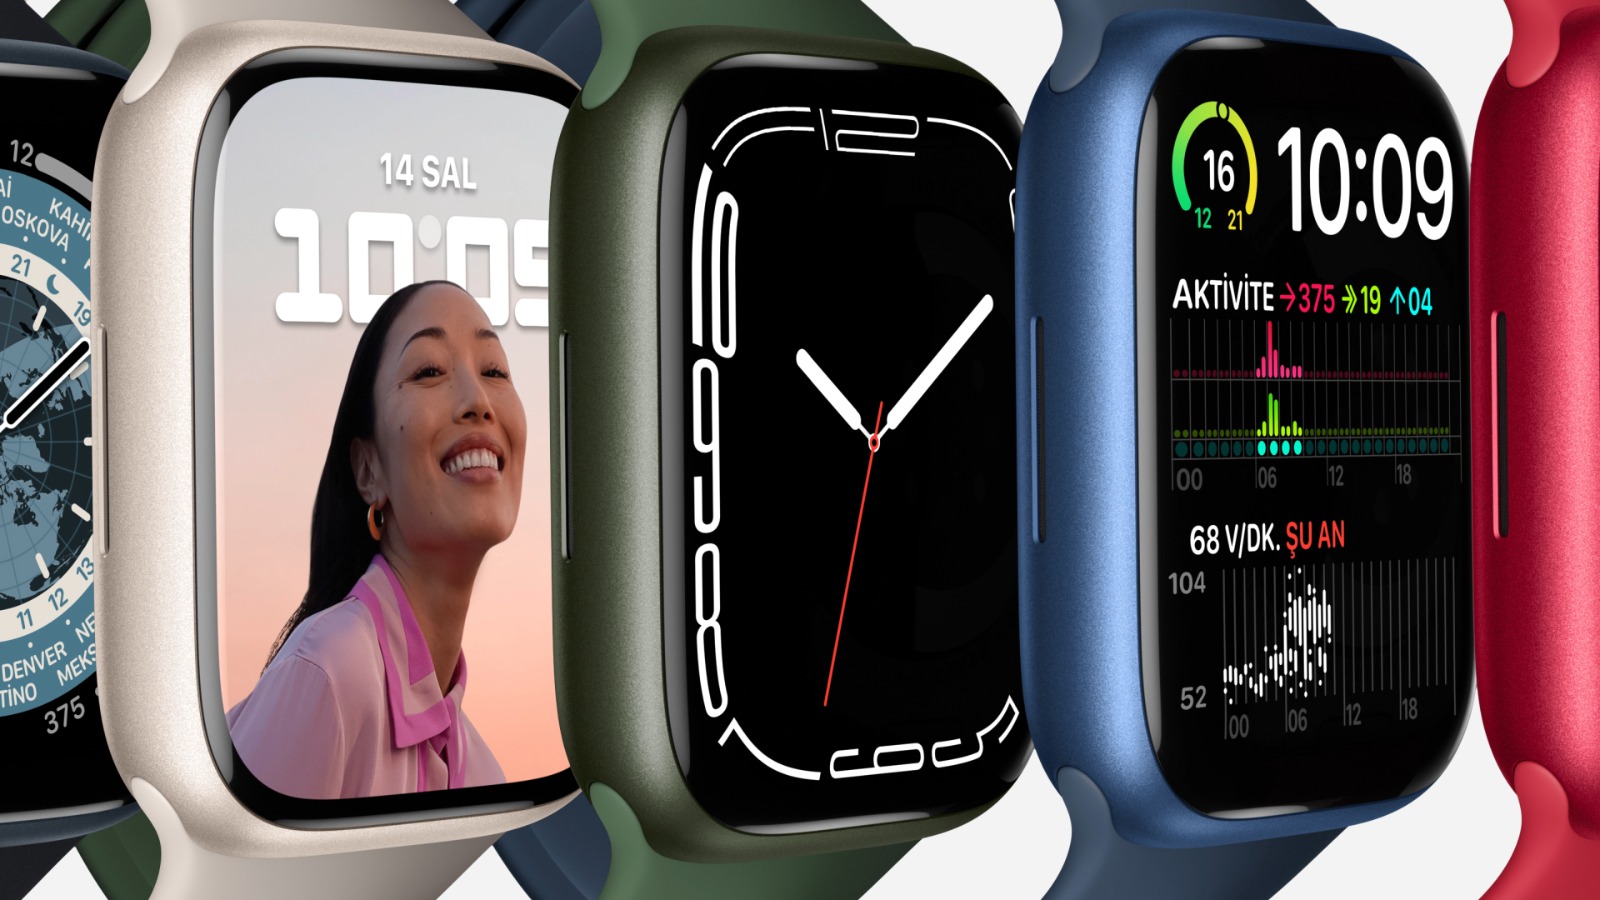 Apple Watch Series 7 GPS + Cellular, 45mm Grafit Paslanmaz Çelik Kasa ve Gece Yarısı Spor Kordon - MNAX3TU/A